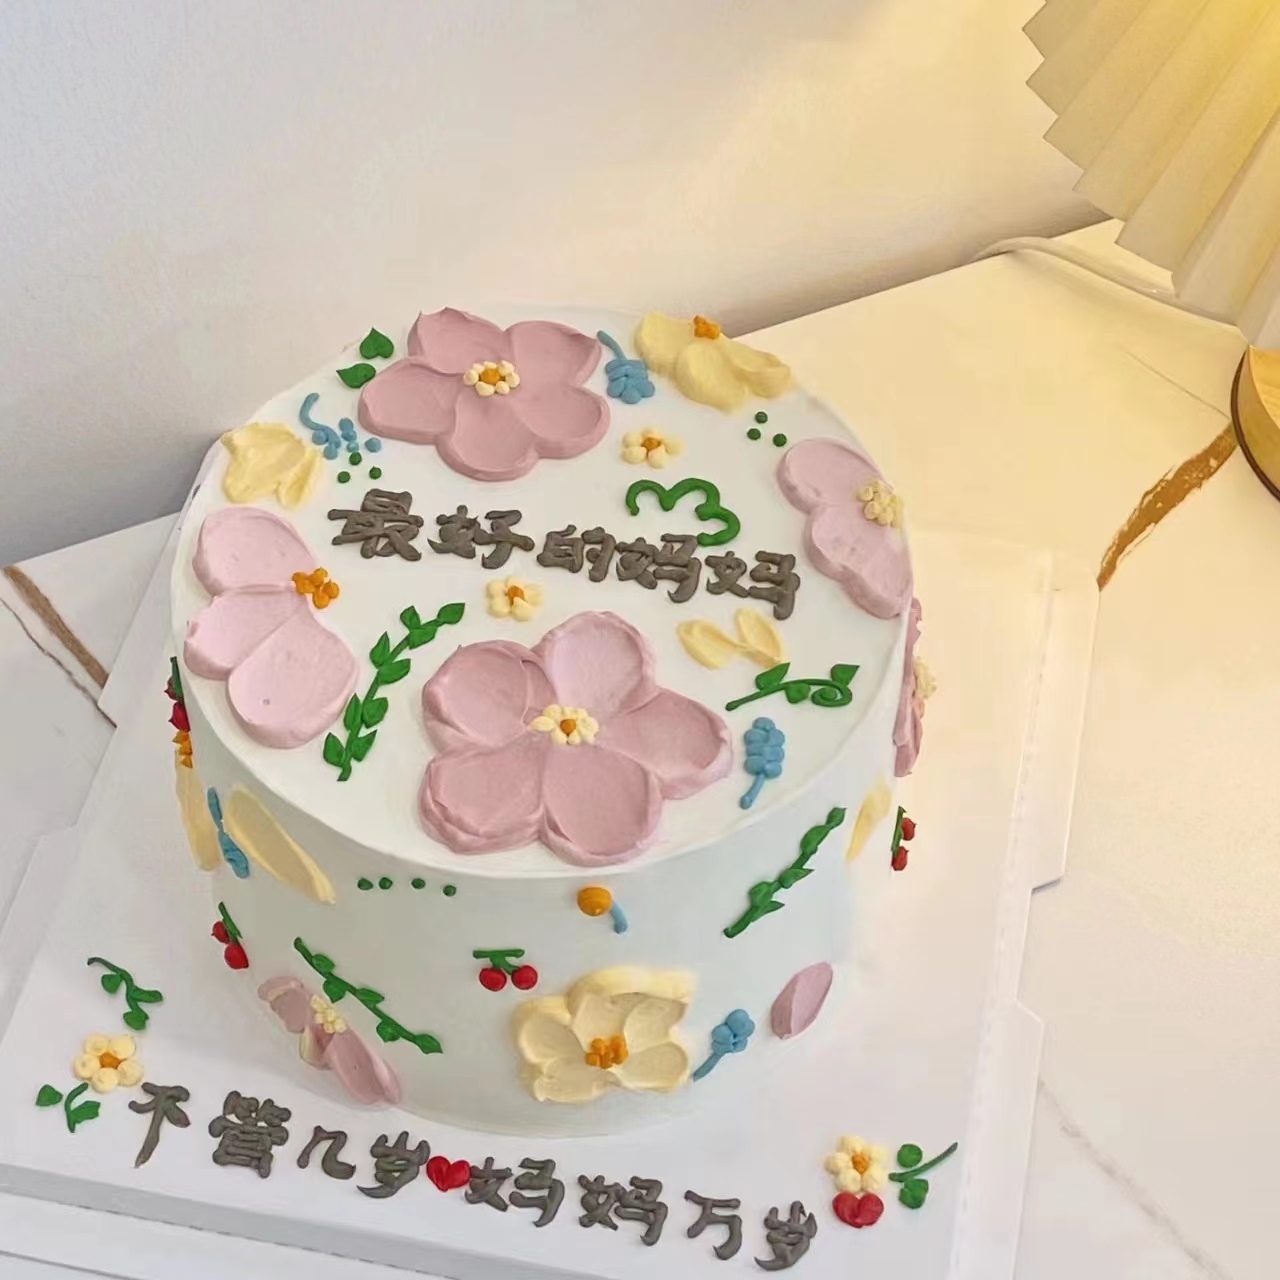 【妈妈手绘裱花款】/生日蛋糕/手绘蛋糕